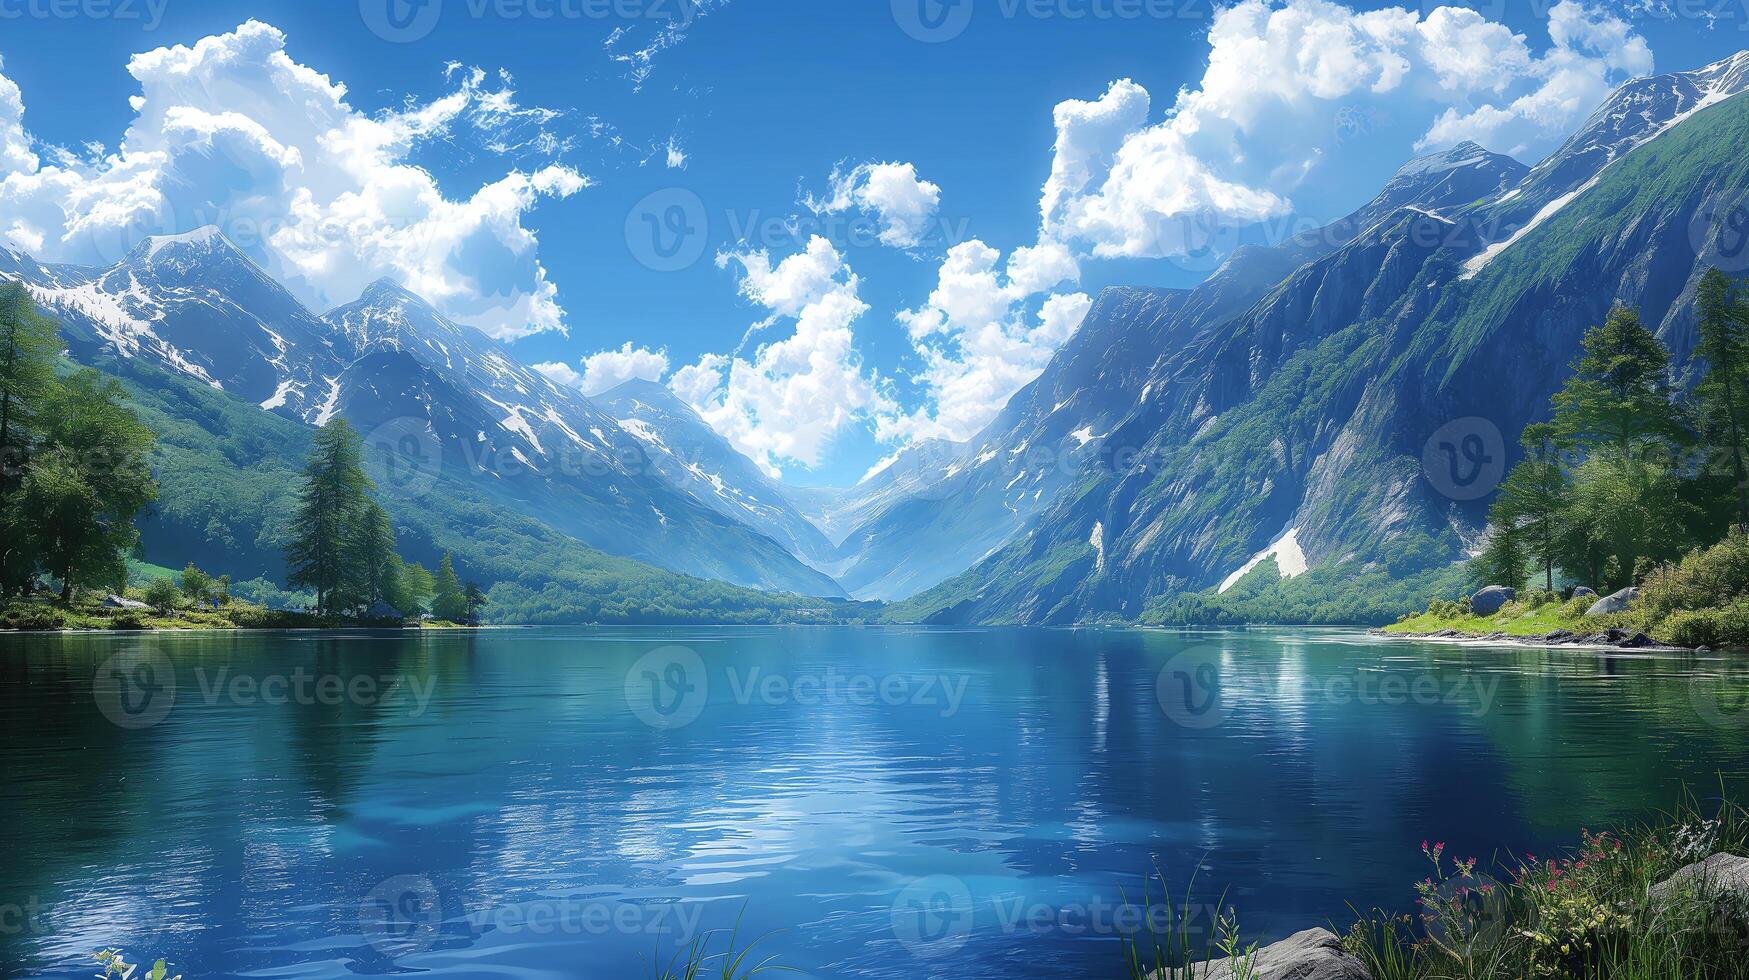 de bild funktioner en flod strömmande över stenar, med en vattenfall och en frodig skog i de bakgrund. de himmel är blå med vit moln, och de Sol är lysande ljust foto